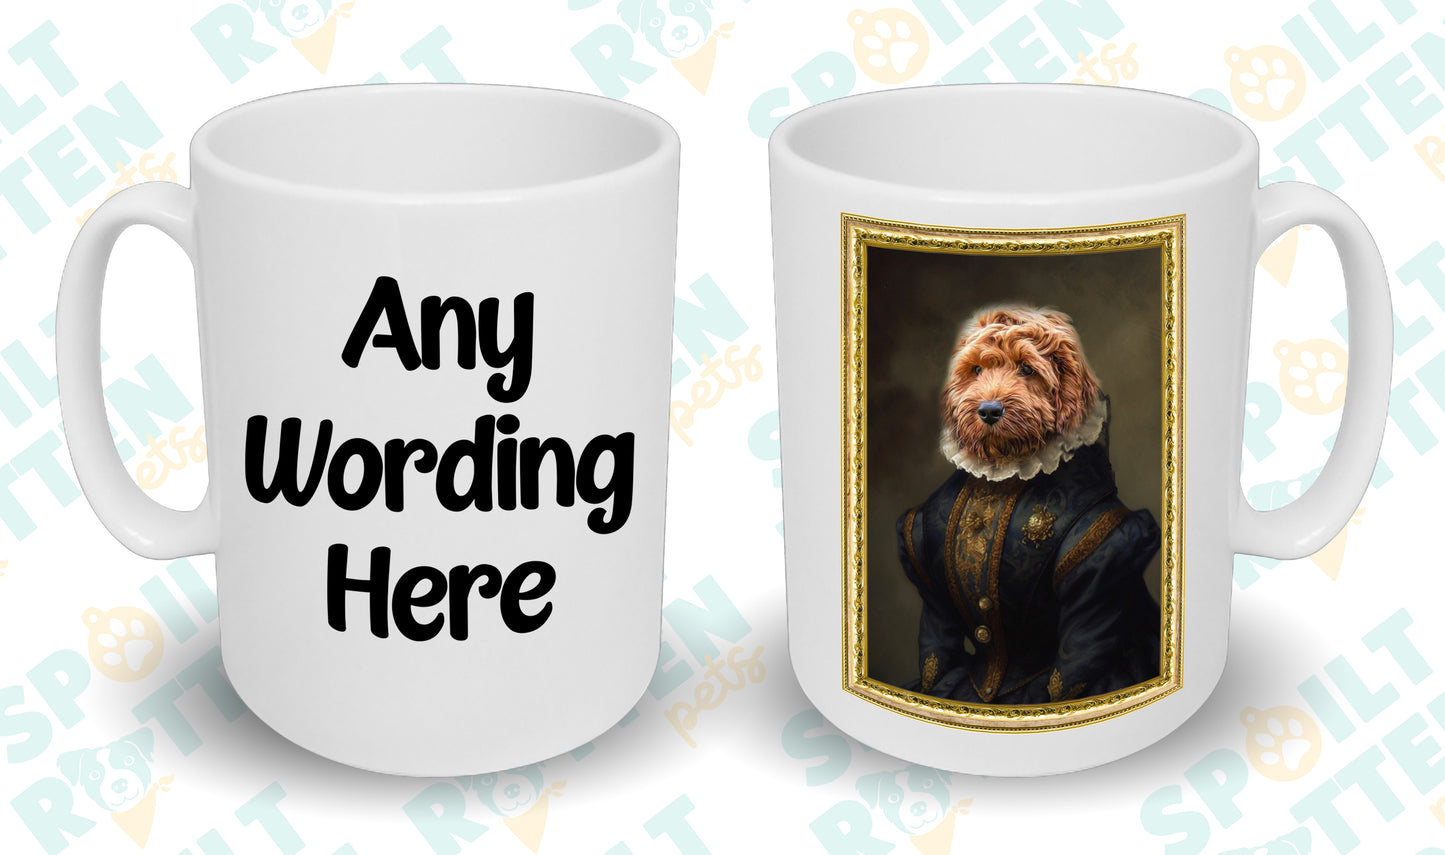 Elizabethan Royalty Custom Pet Portrait Mug - Add Your Own Photo